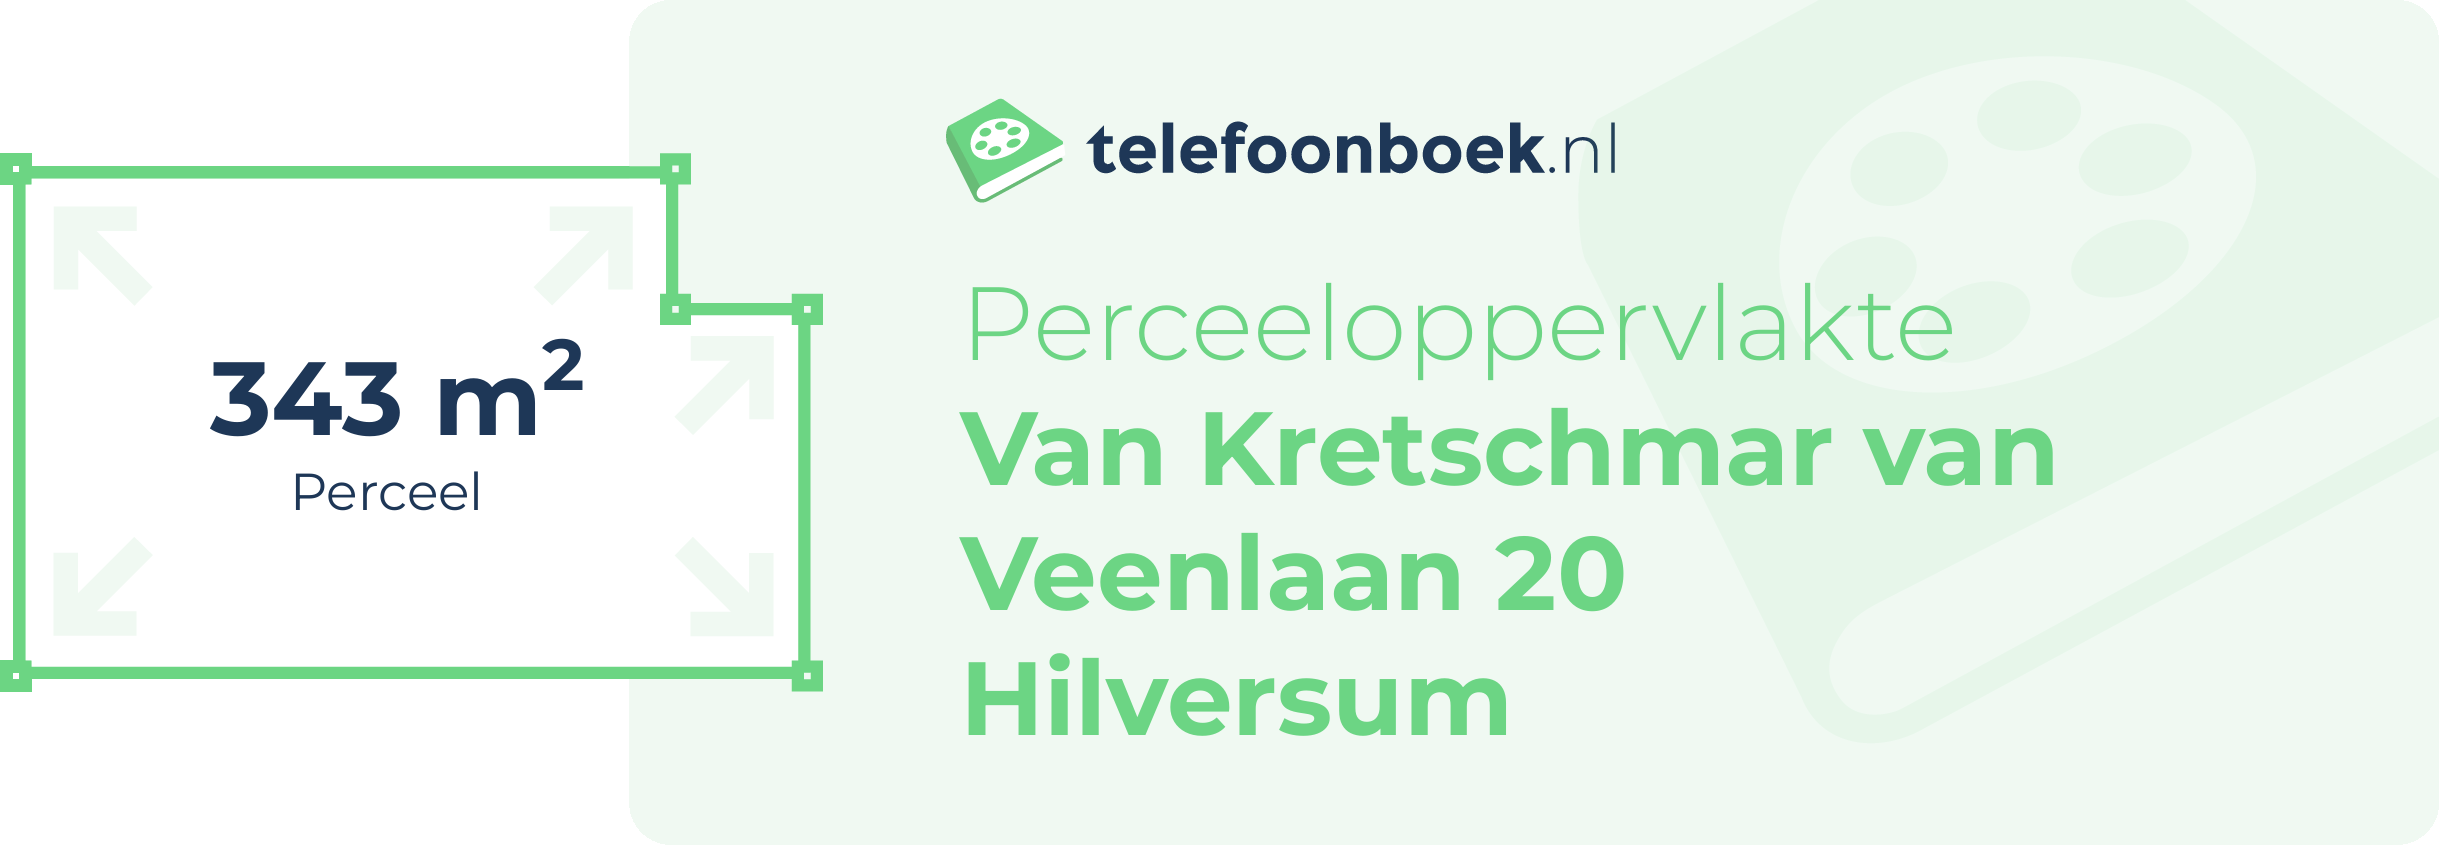 Perceeloppervlakte Van Kretschmar Van Veenlaan 20 Hilversum